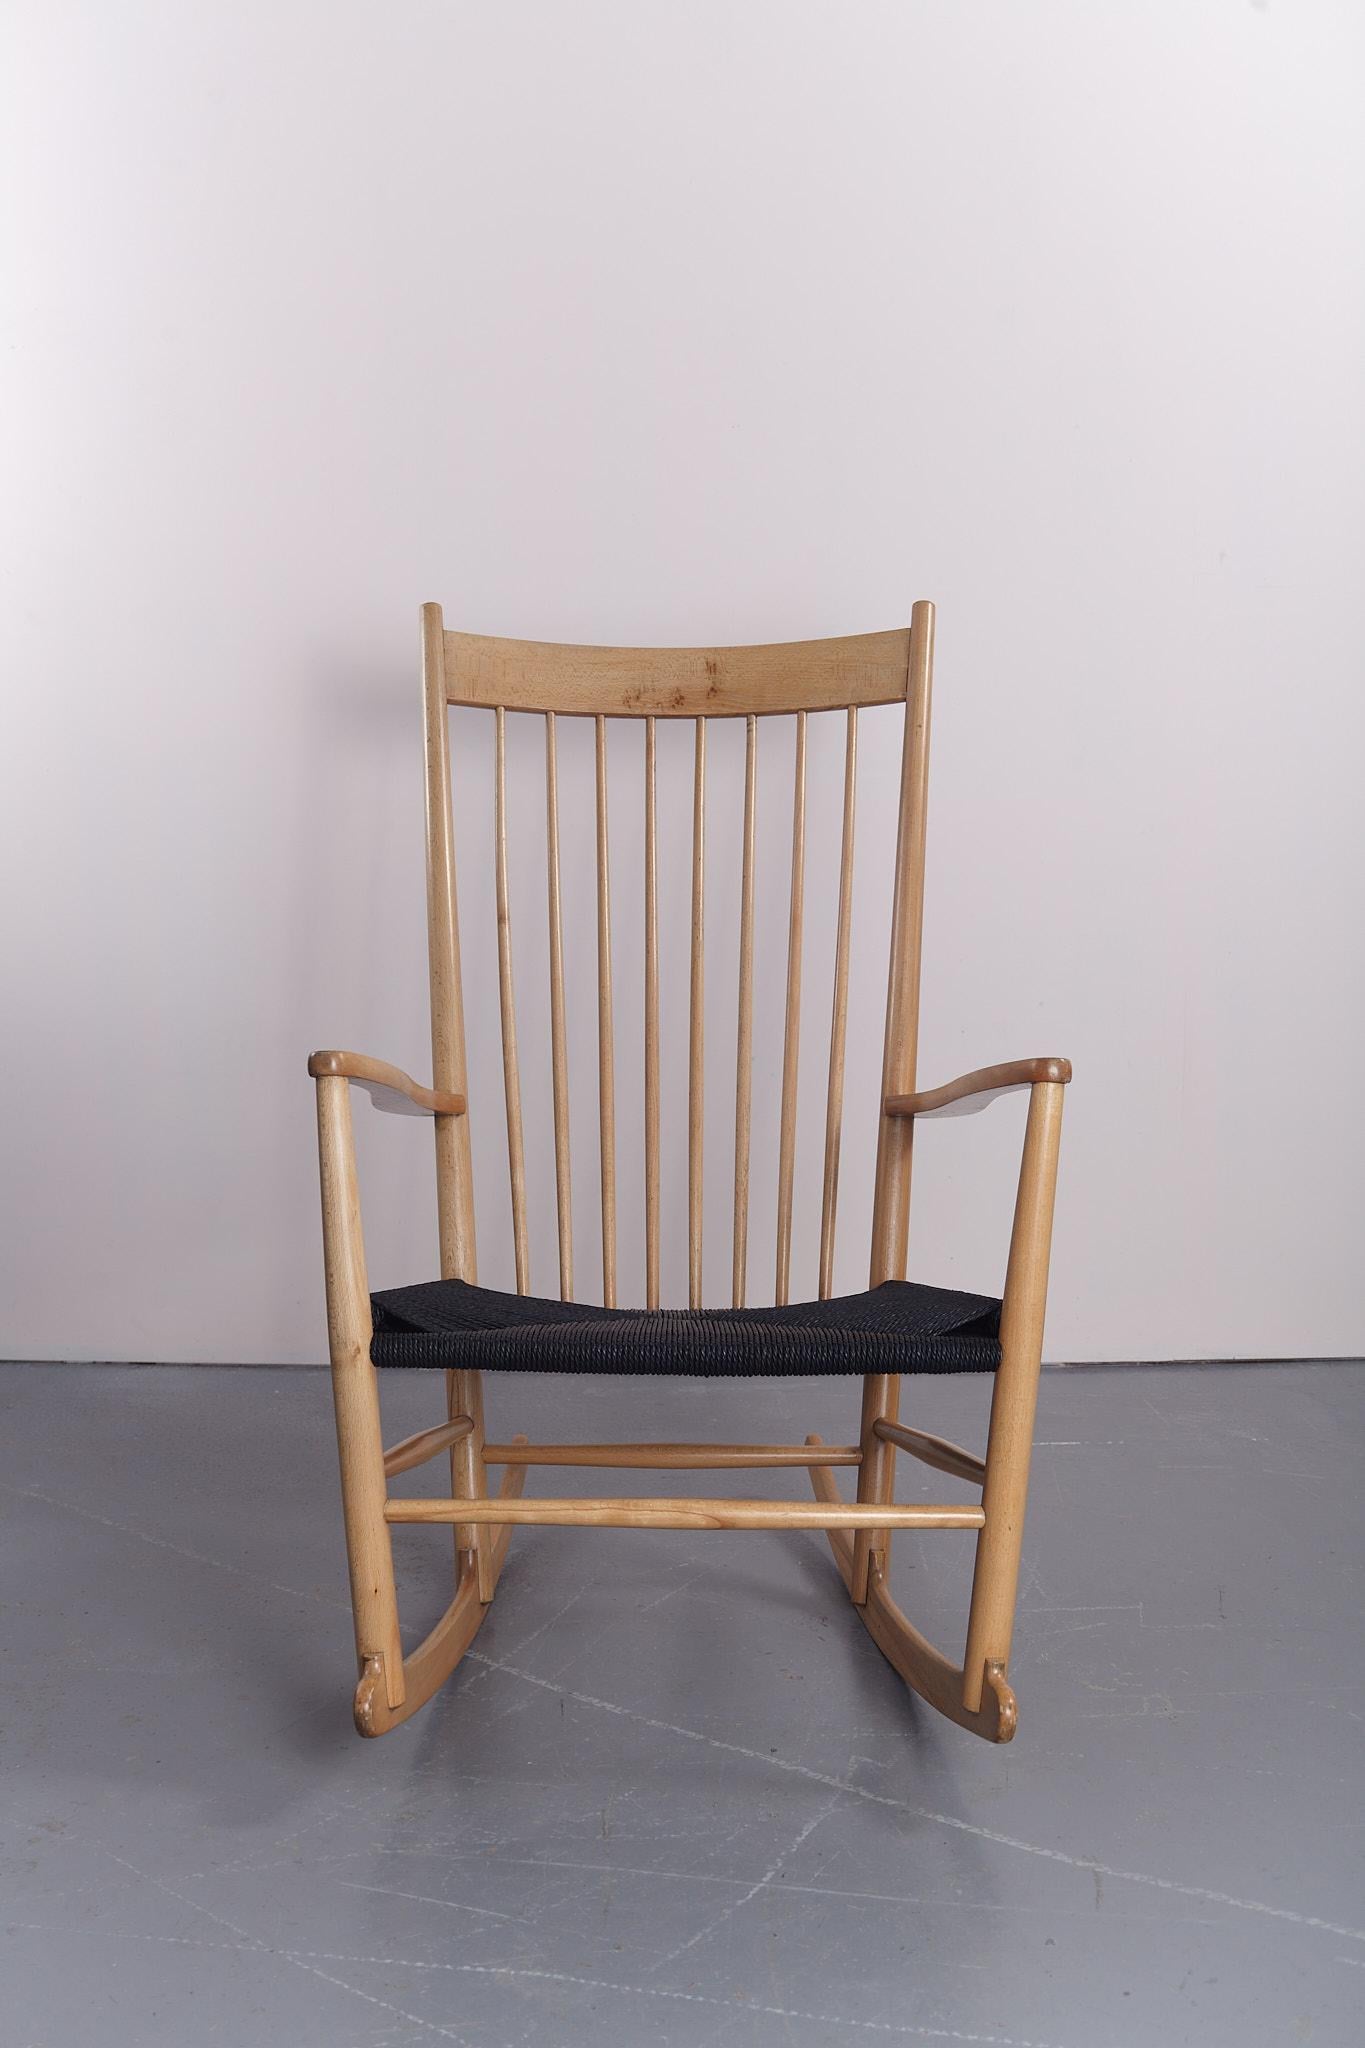 Der 1944 entworfene Schaukelstuhl J16 war der erste Serienstuhl von Hans Wegner. Diese Wippe, deren Design an den Shaker-Stil und den Windsor-Stuhl angelehnt ist, ist großzügig proportioniert und wirkt dennoch leicht und elegant im Raum. 

Wegner